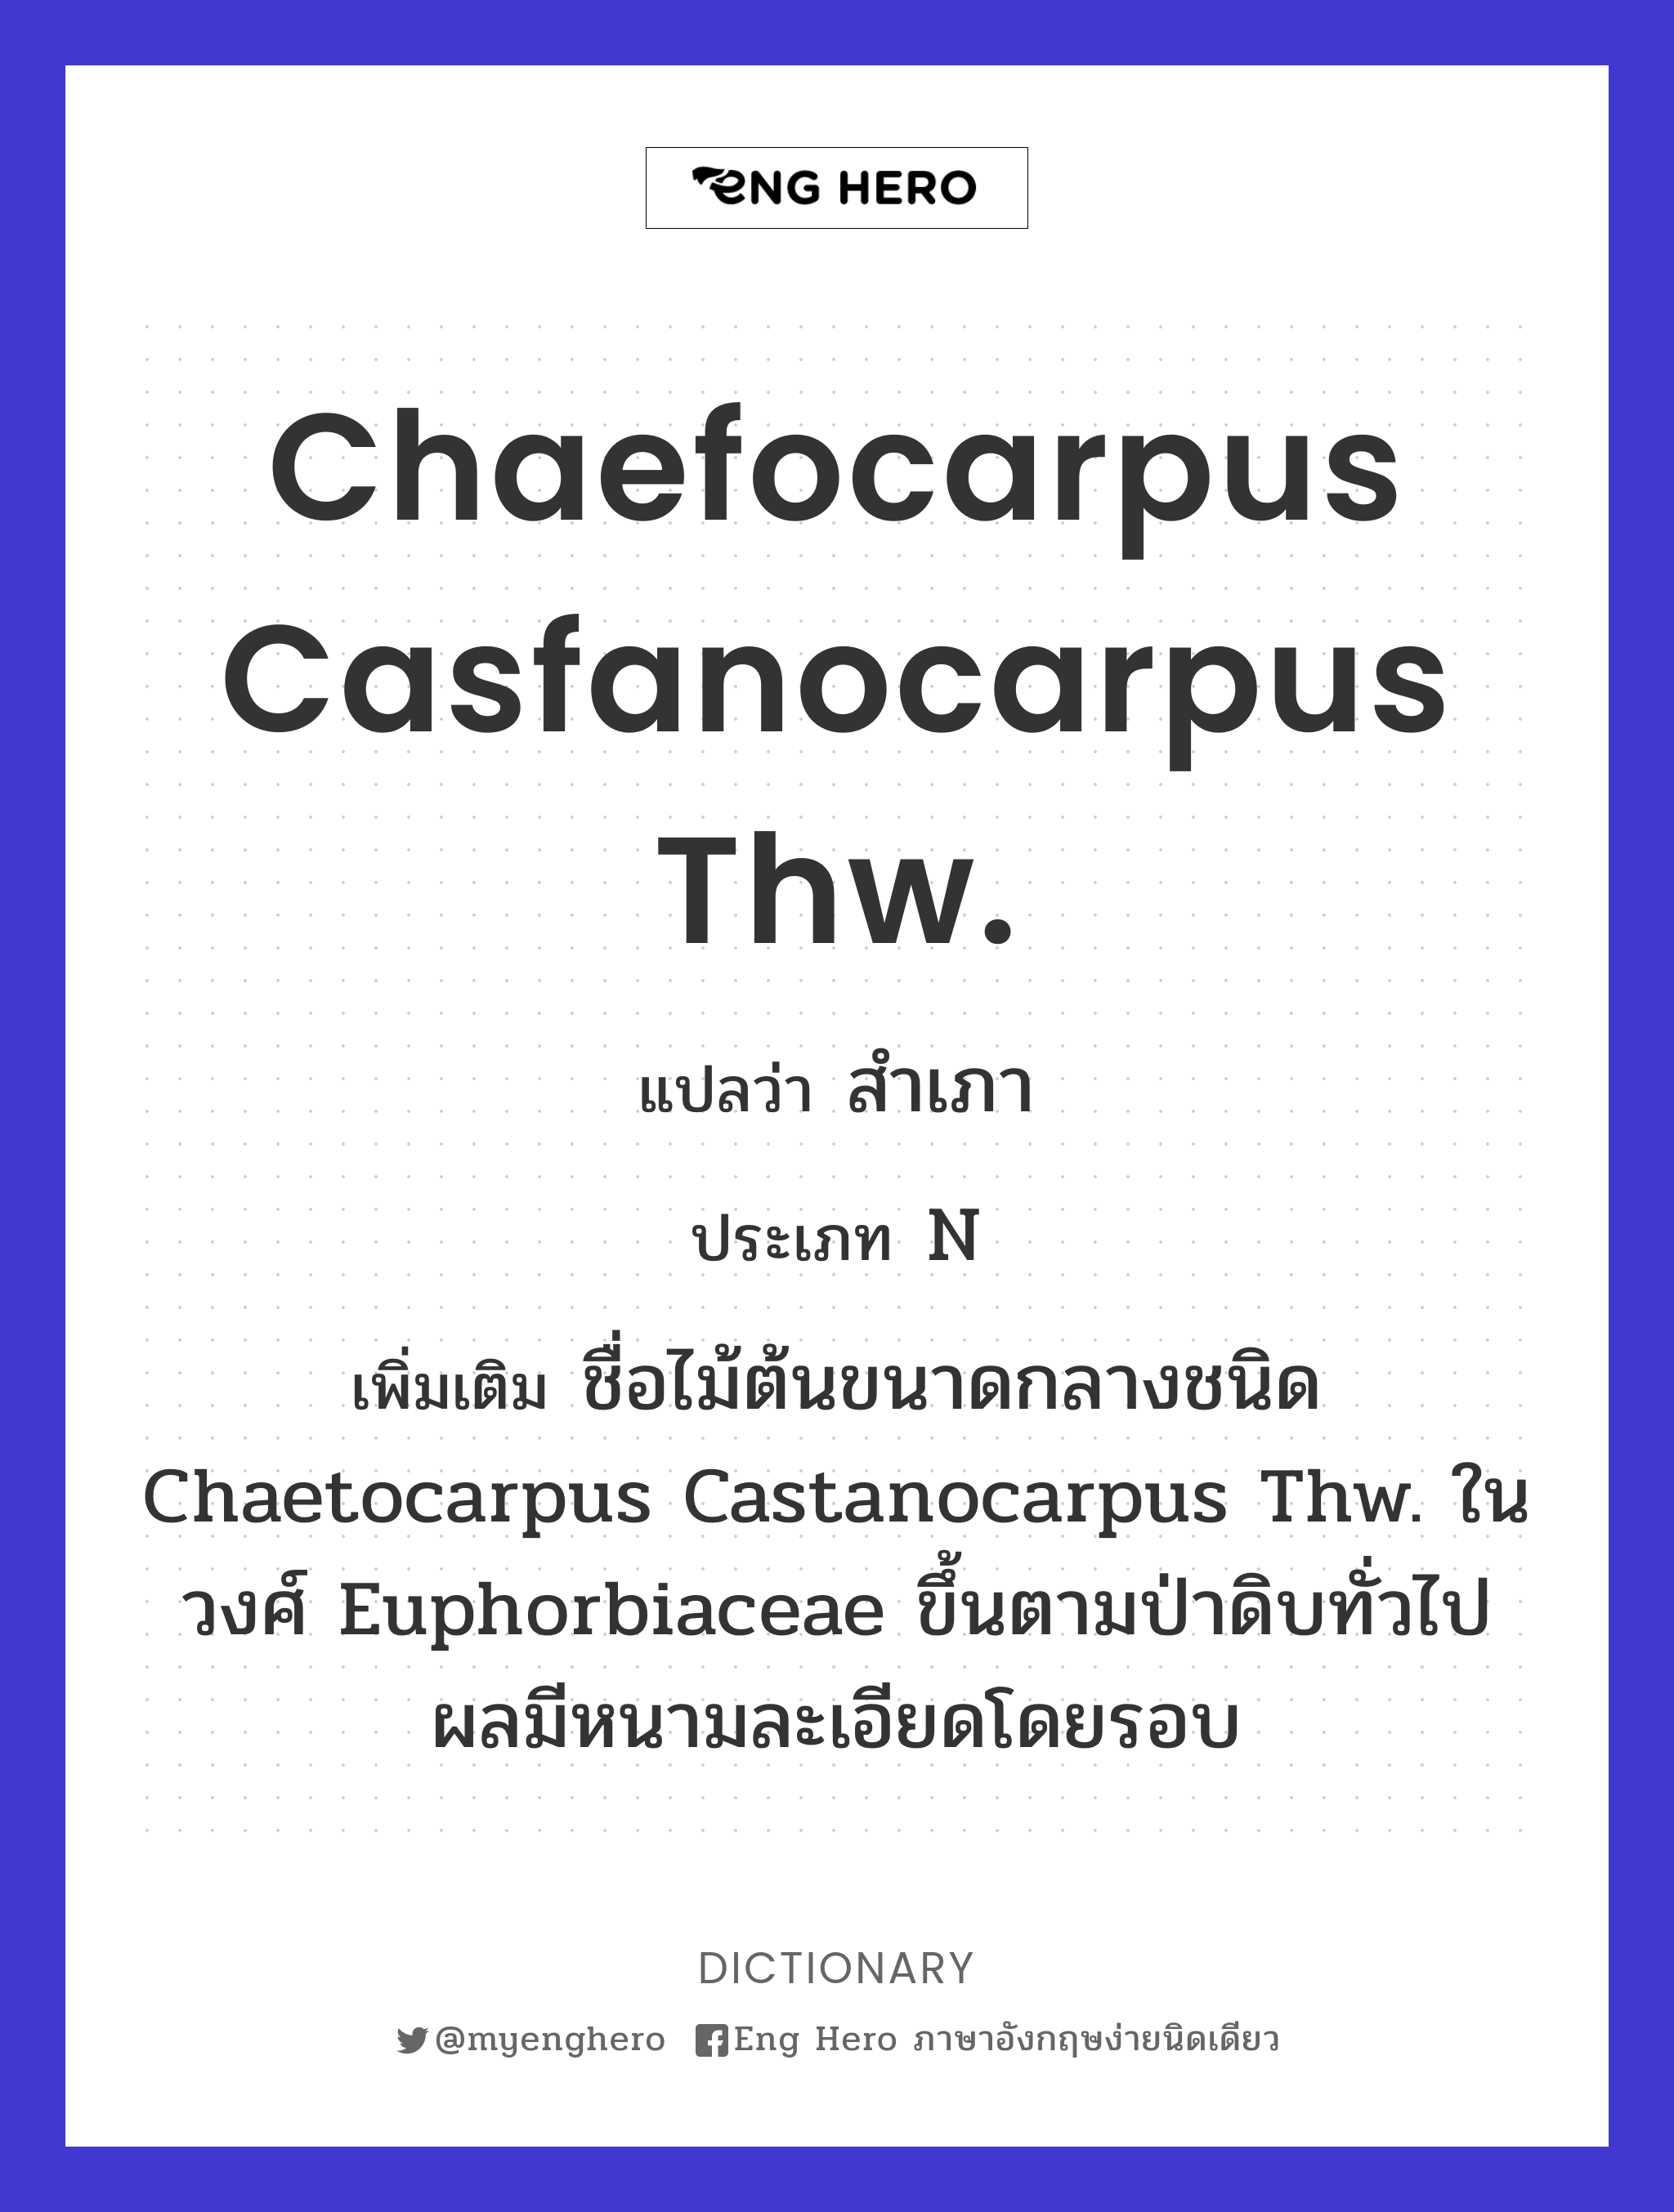 Chaefocarpus casfanocarpus Thw.